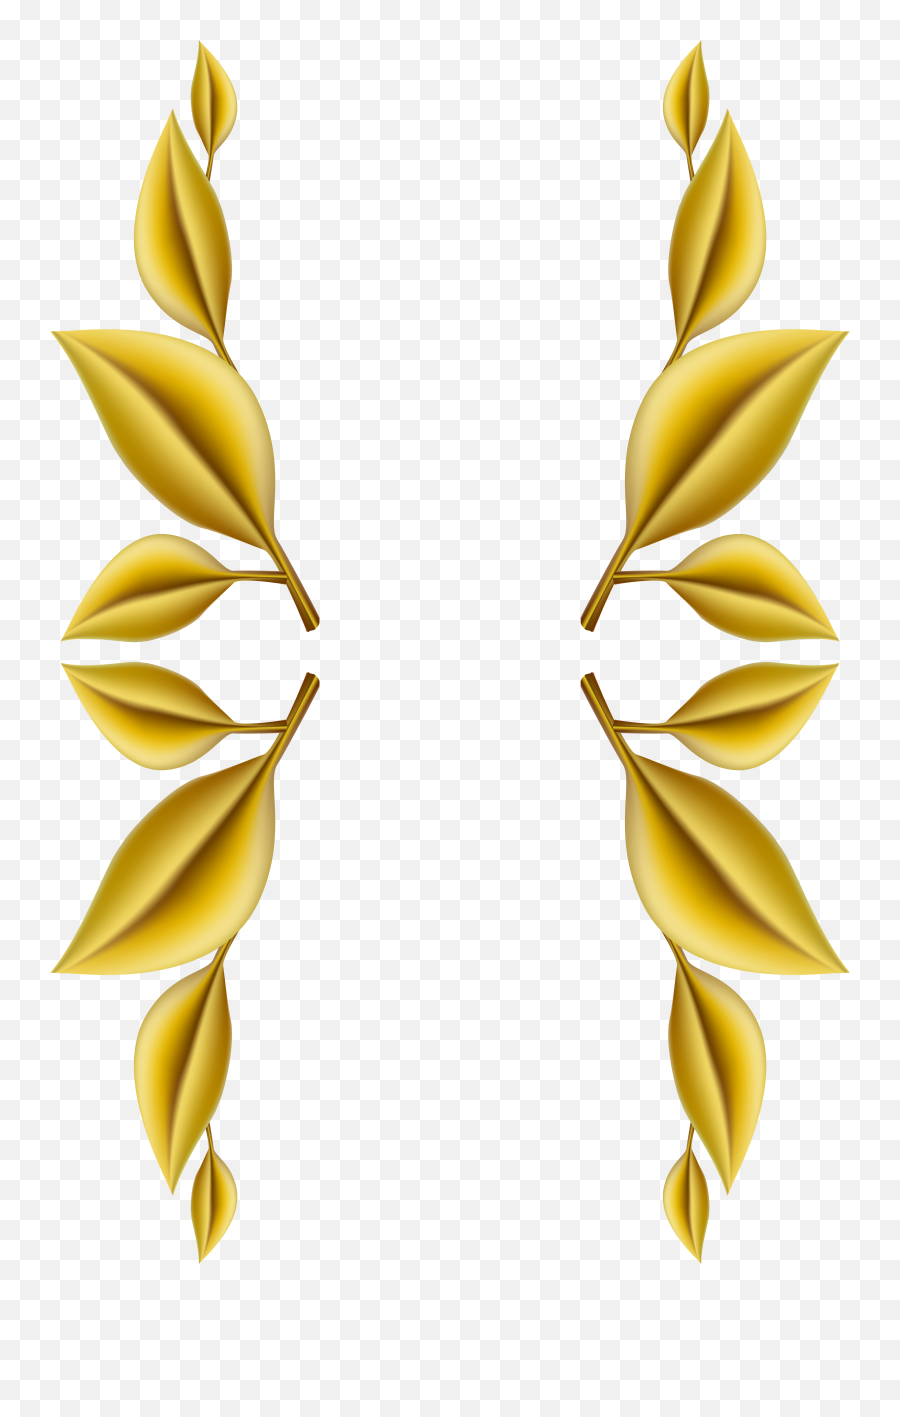 Gold Leaf Border - Gold Leaves Border Transparent Emoji,Leaf Border Clipart